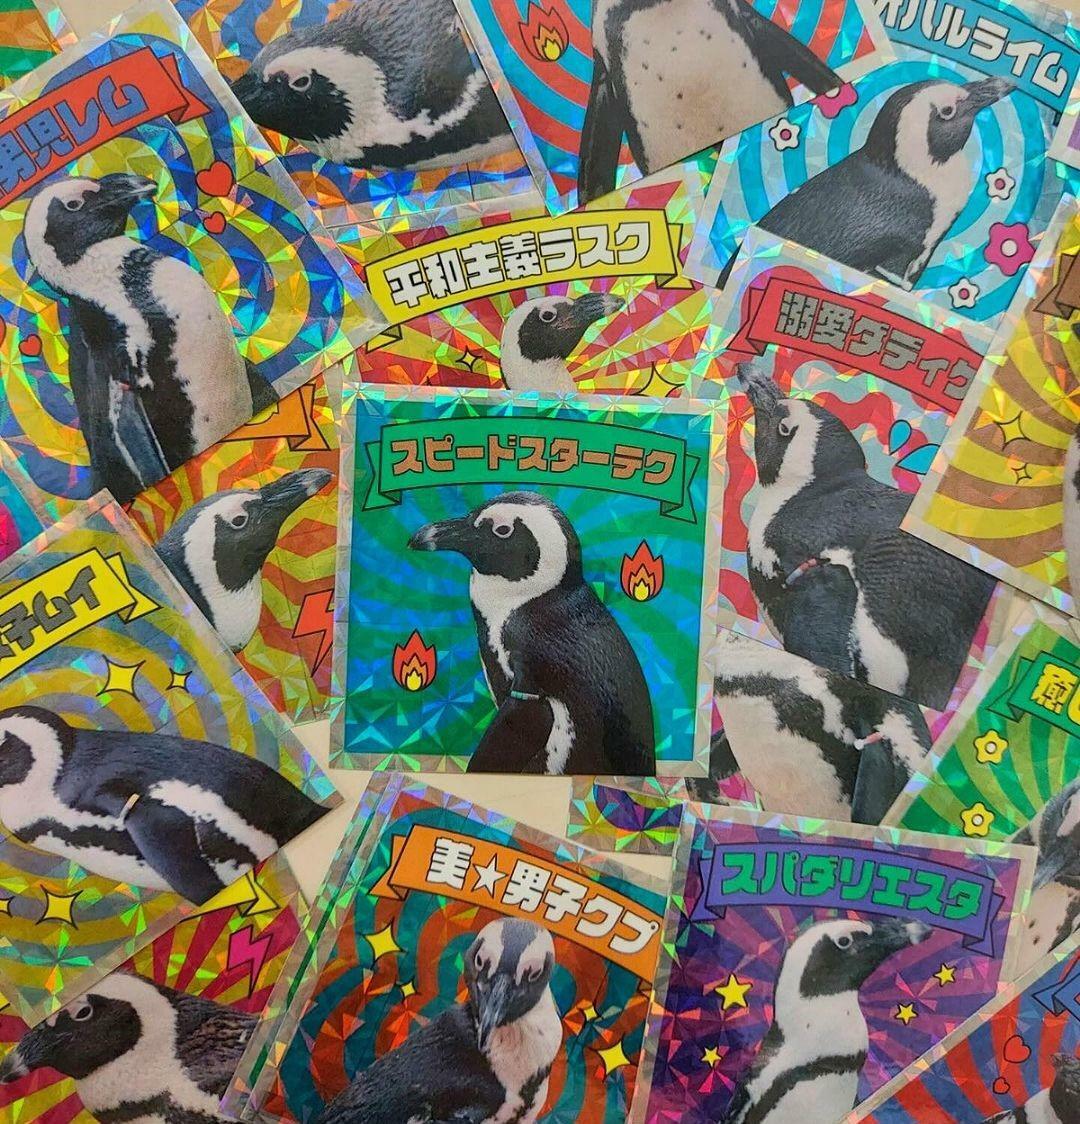 オープニングセレモニーの特典では、ペンギンステッカーが1枚プレゼントされます＜※画像提供：マリンワールド海の中道＞